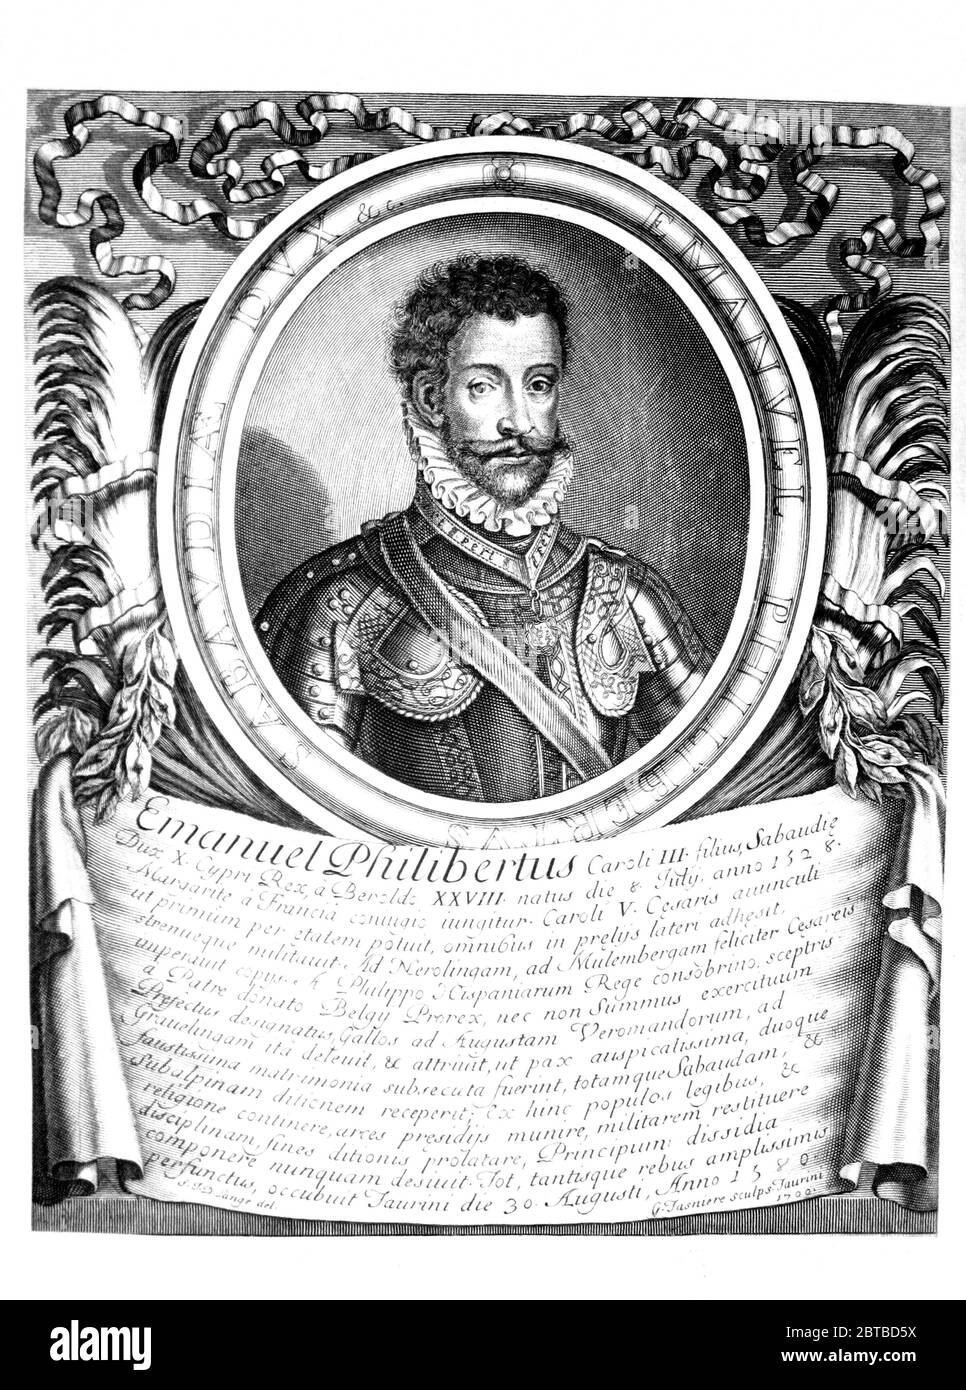 1550 ca, ITALIA: Il Principe emanuele FILIBERTO di SAVOIA ( 1528 - 1580 ). Ritratto di D. Lange, - Principe Amadeo , inciso da P. Giffart , Parigi , 1702 . - Emmanuel Philibert Duca di Savoia - Duc de SAVOYE - SAVOY - CASA SAVOIA - ITALIA - FRANCIA - REALI - Nobiltà italiana - SAVOY - NOBILTÀ - REGALITÀ - STORIA - FOTO STORICHE ---- Archivio GBB Foto Stock